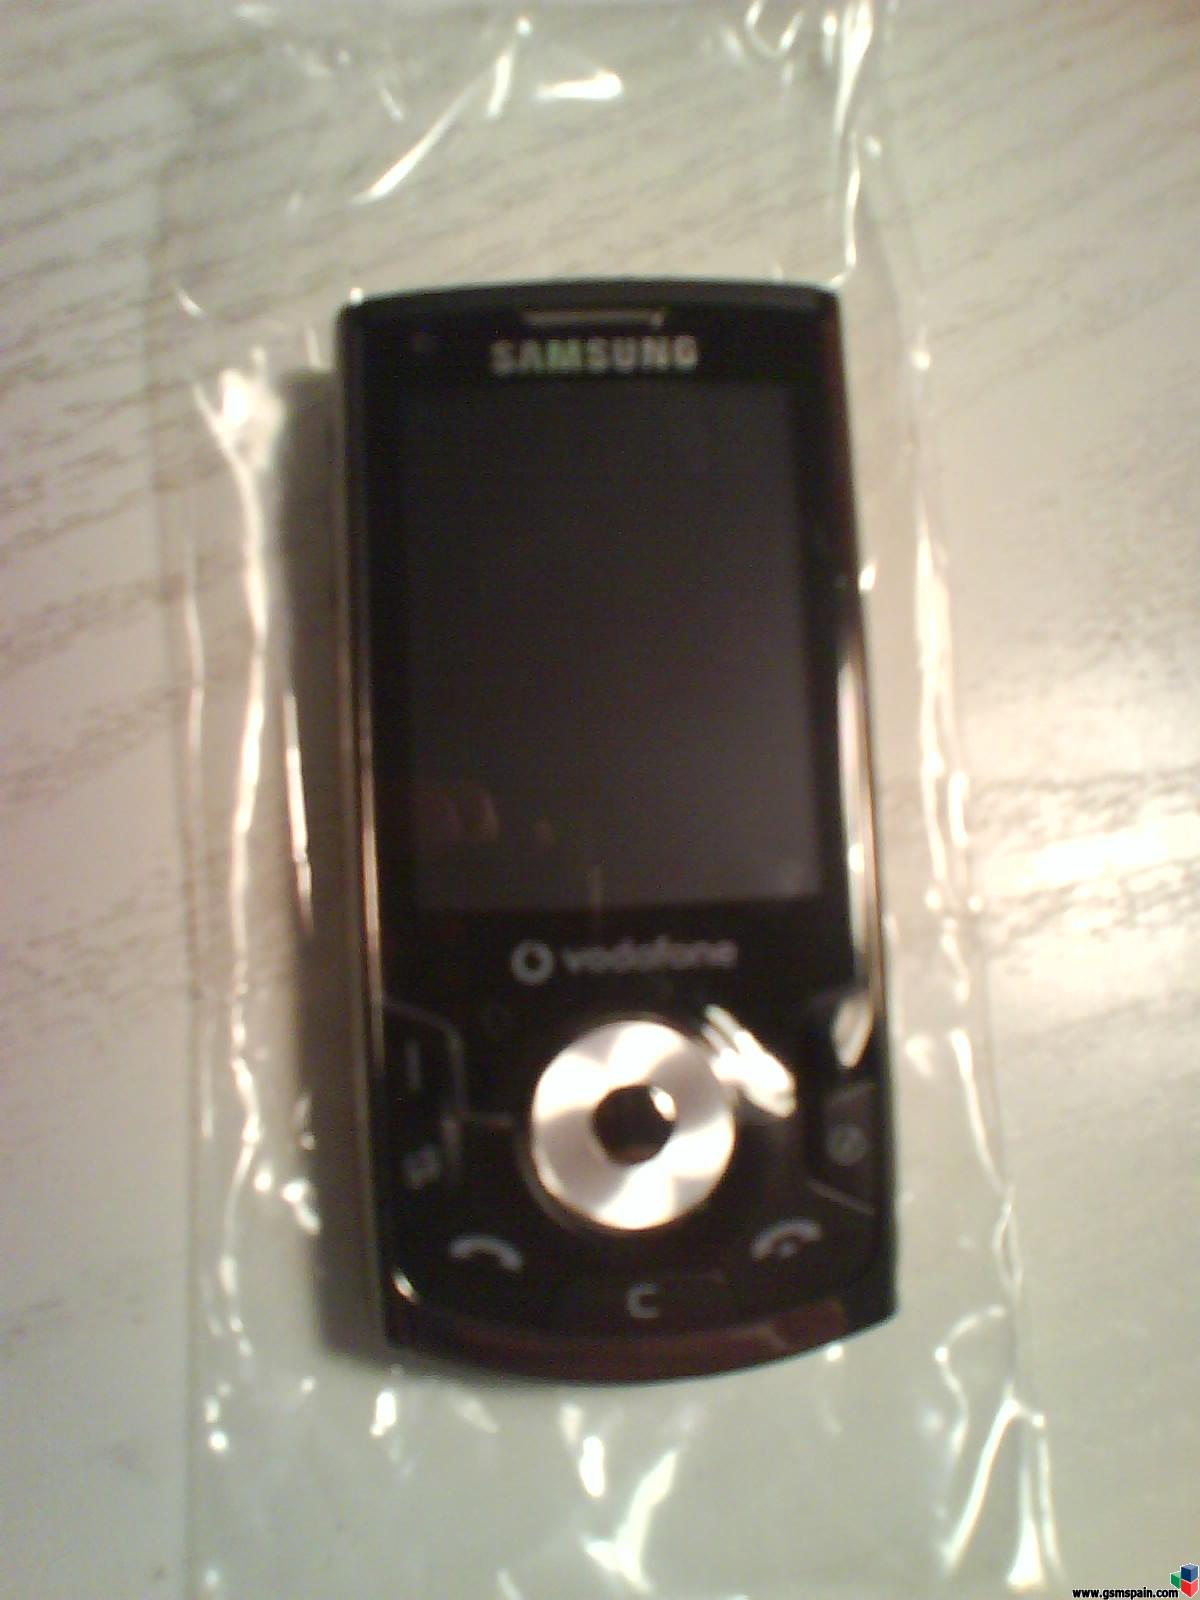 Review Samsung i560v